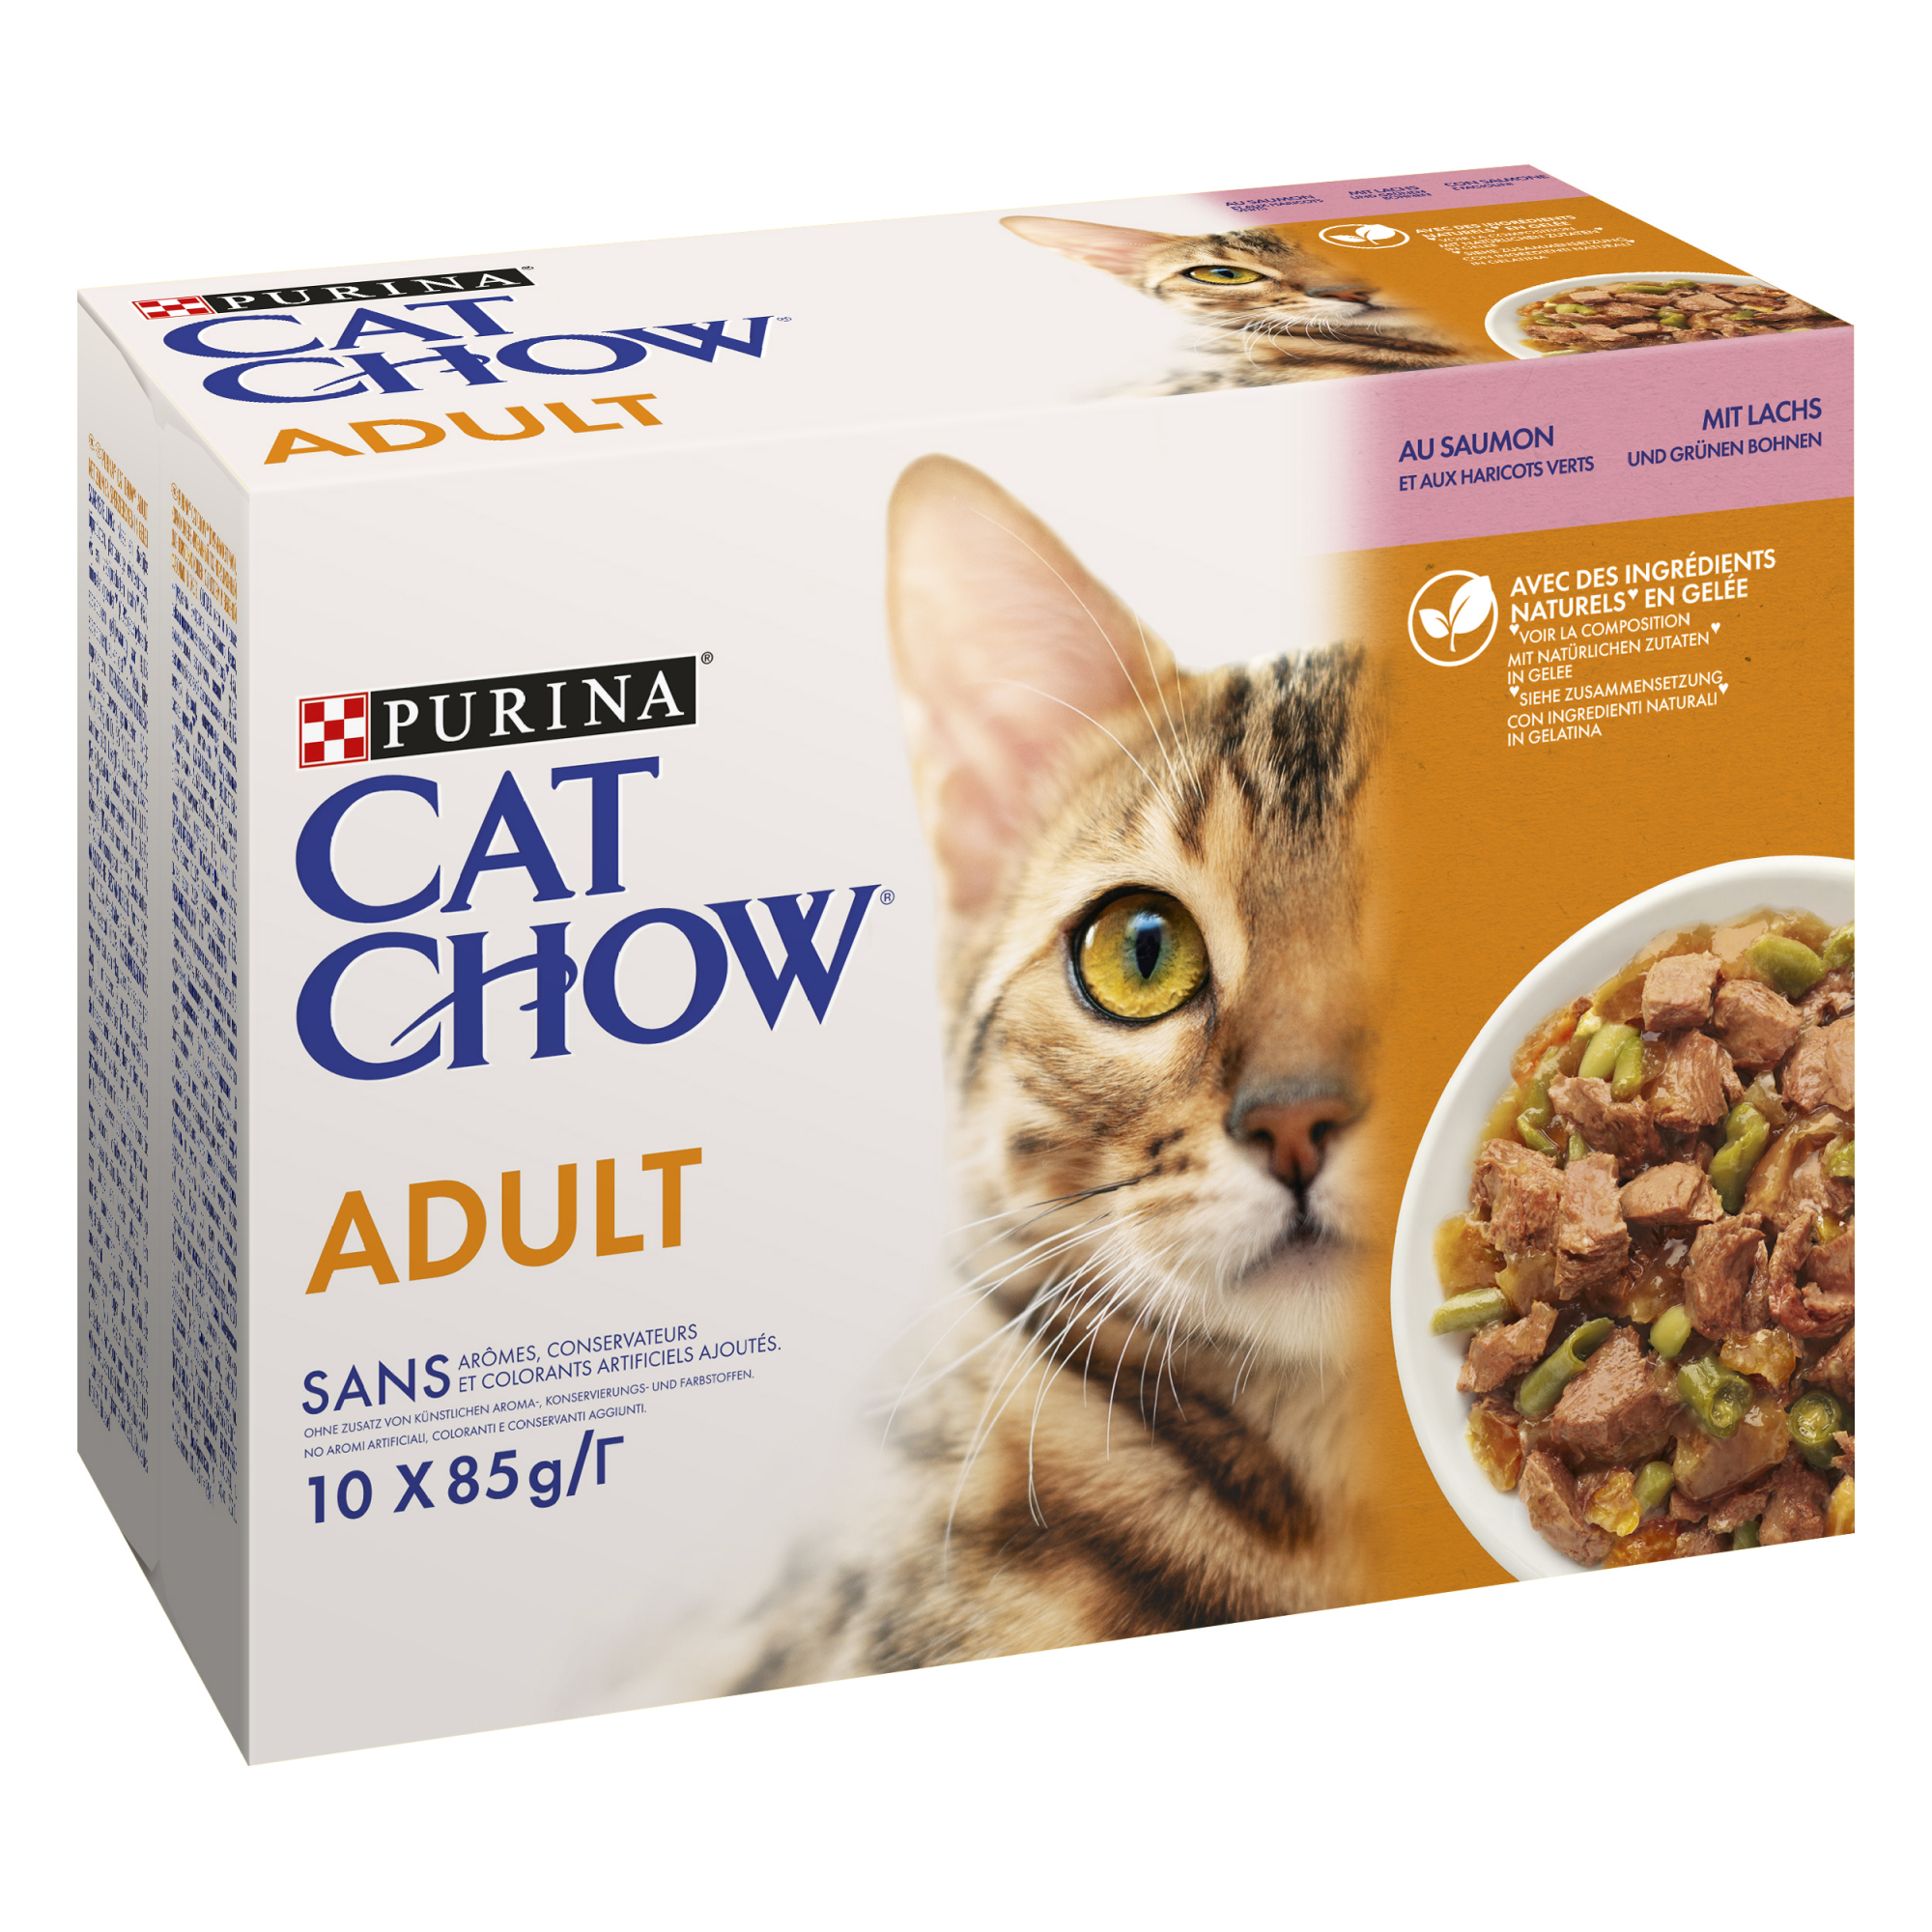 CAT CHOW Adult pâtée pour chat